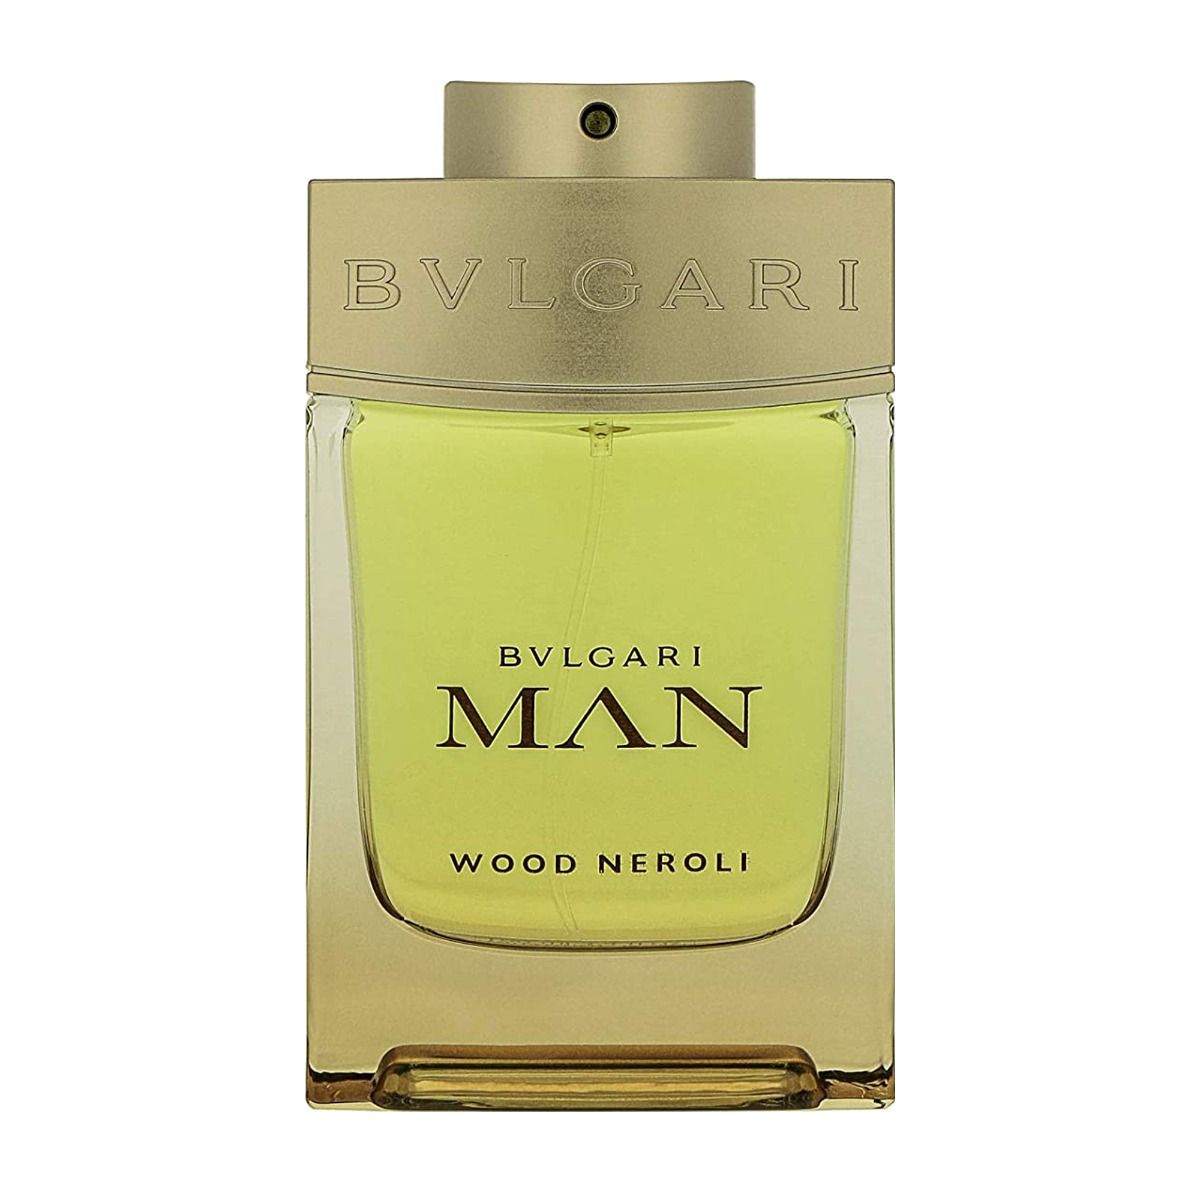 Bvlgari Man Wood Neroli Edp 100ml-Perfume - AllurebeautypkBvlgari Man Wood Neroli Edp 100ml-Perfume